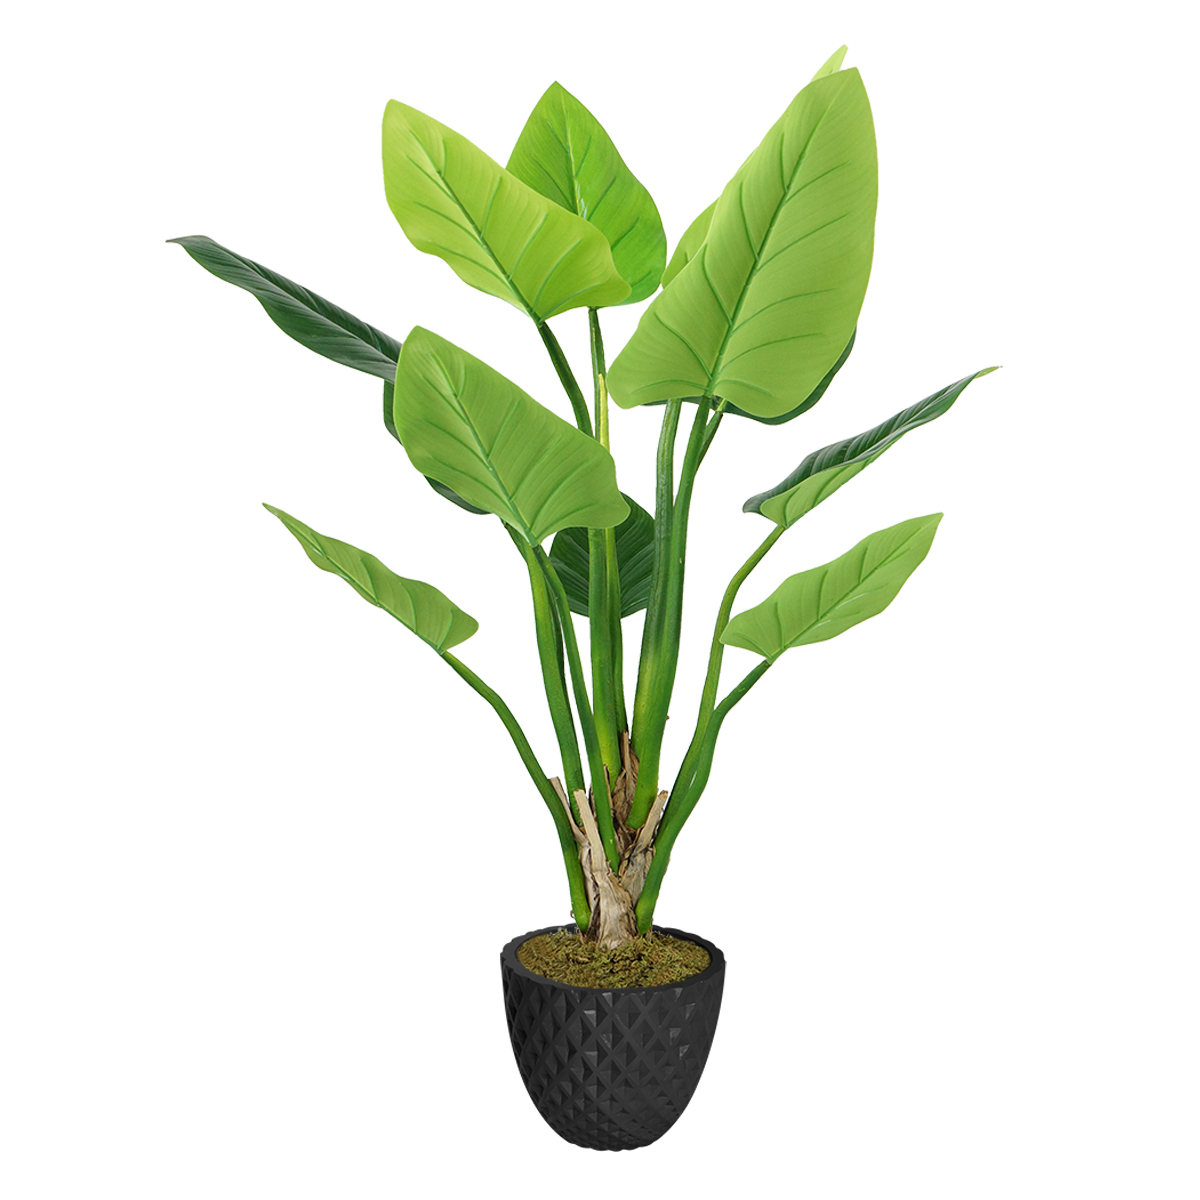 Vhx136205 33.6 In. Philodendron Erubescens Green Emerald Plant In Fiberstone Planter